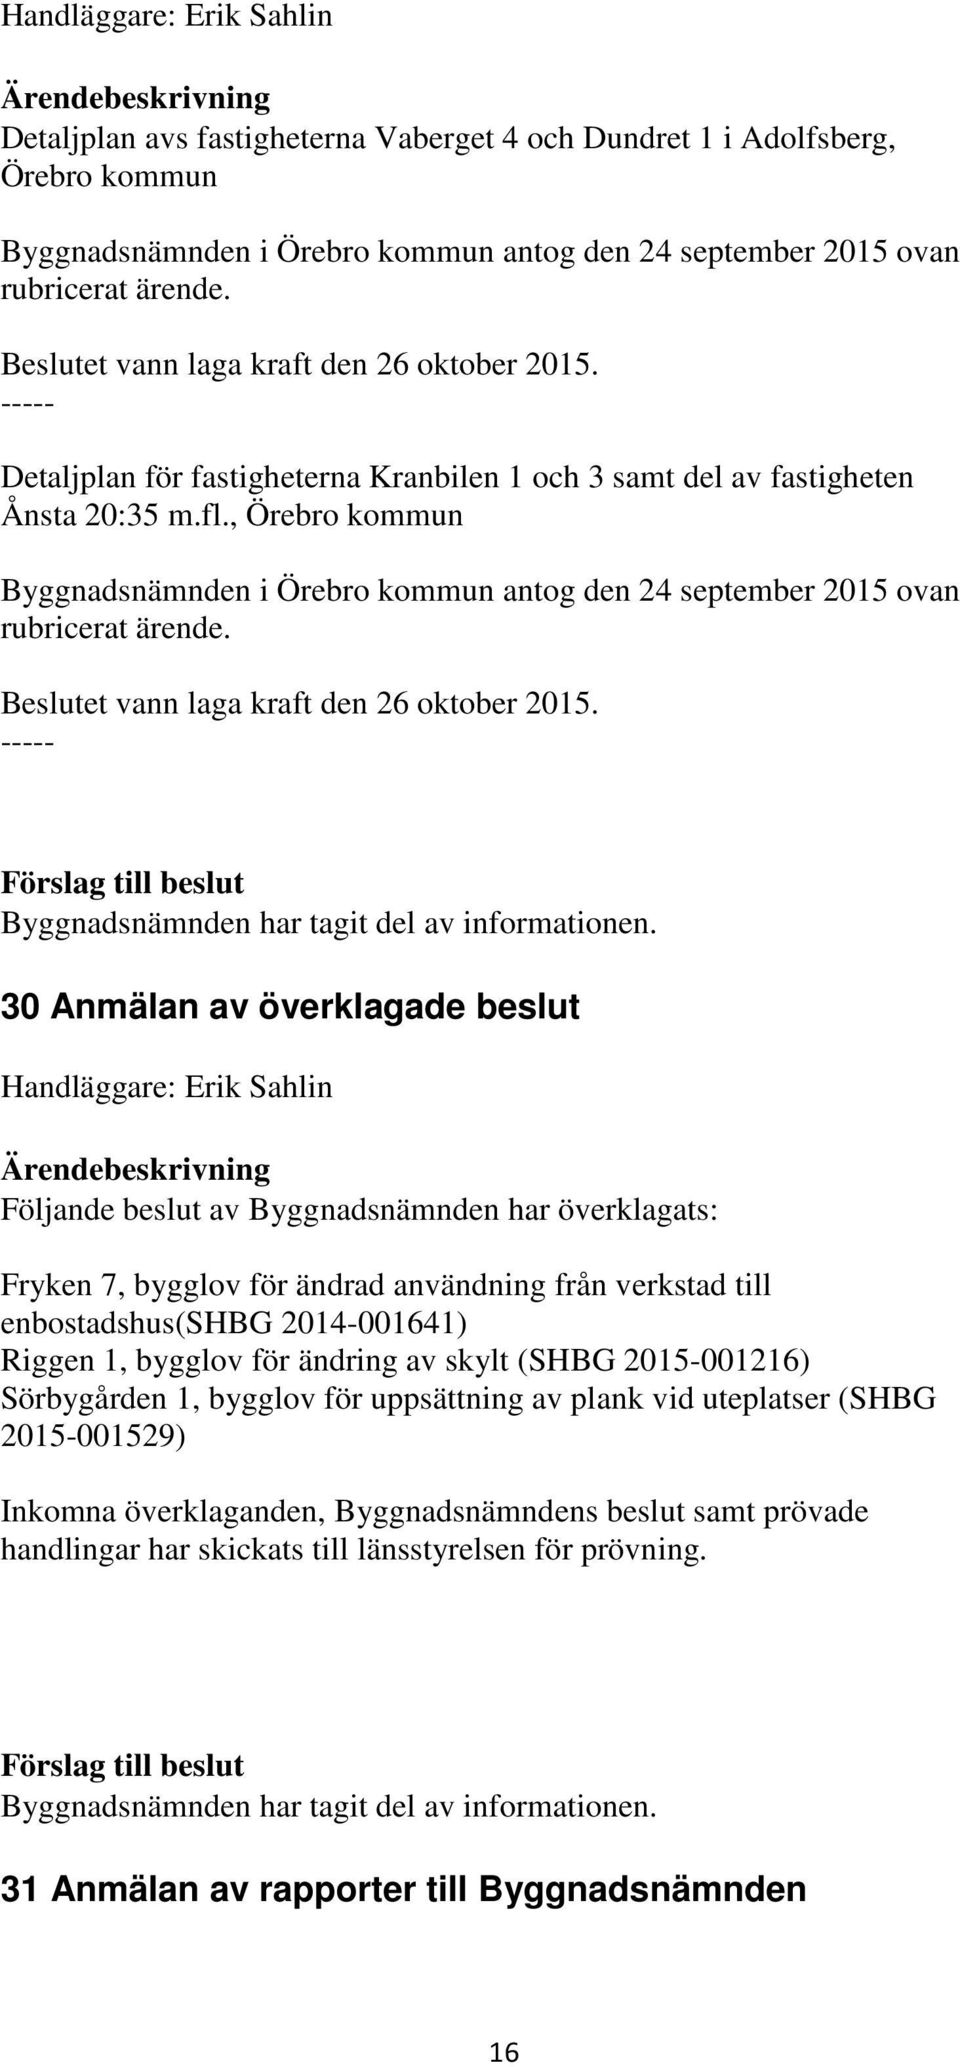 , Örebro kommun Byggnadsnämnden i Örebro kommun antog den 24 september 2015 ovan rubricerat ärende. Beslutet vann laga kraft den 26 oktober 2015. ----- Byggnadsnämnden har tagit del av informationen.